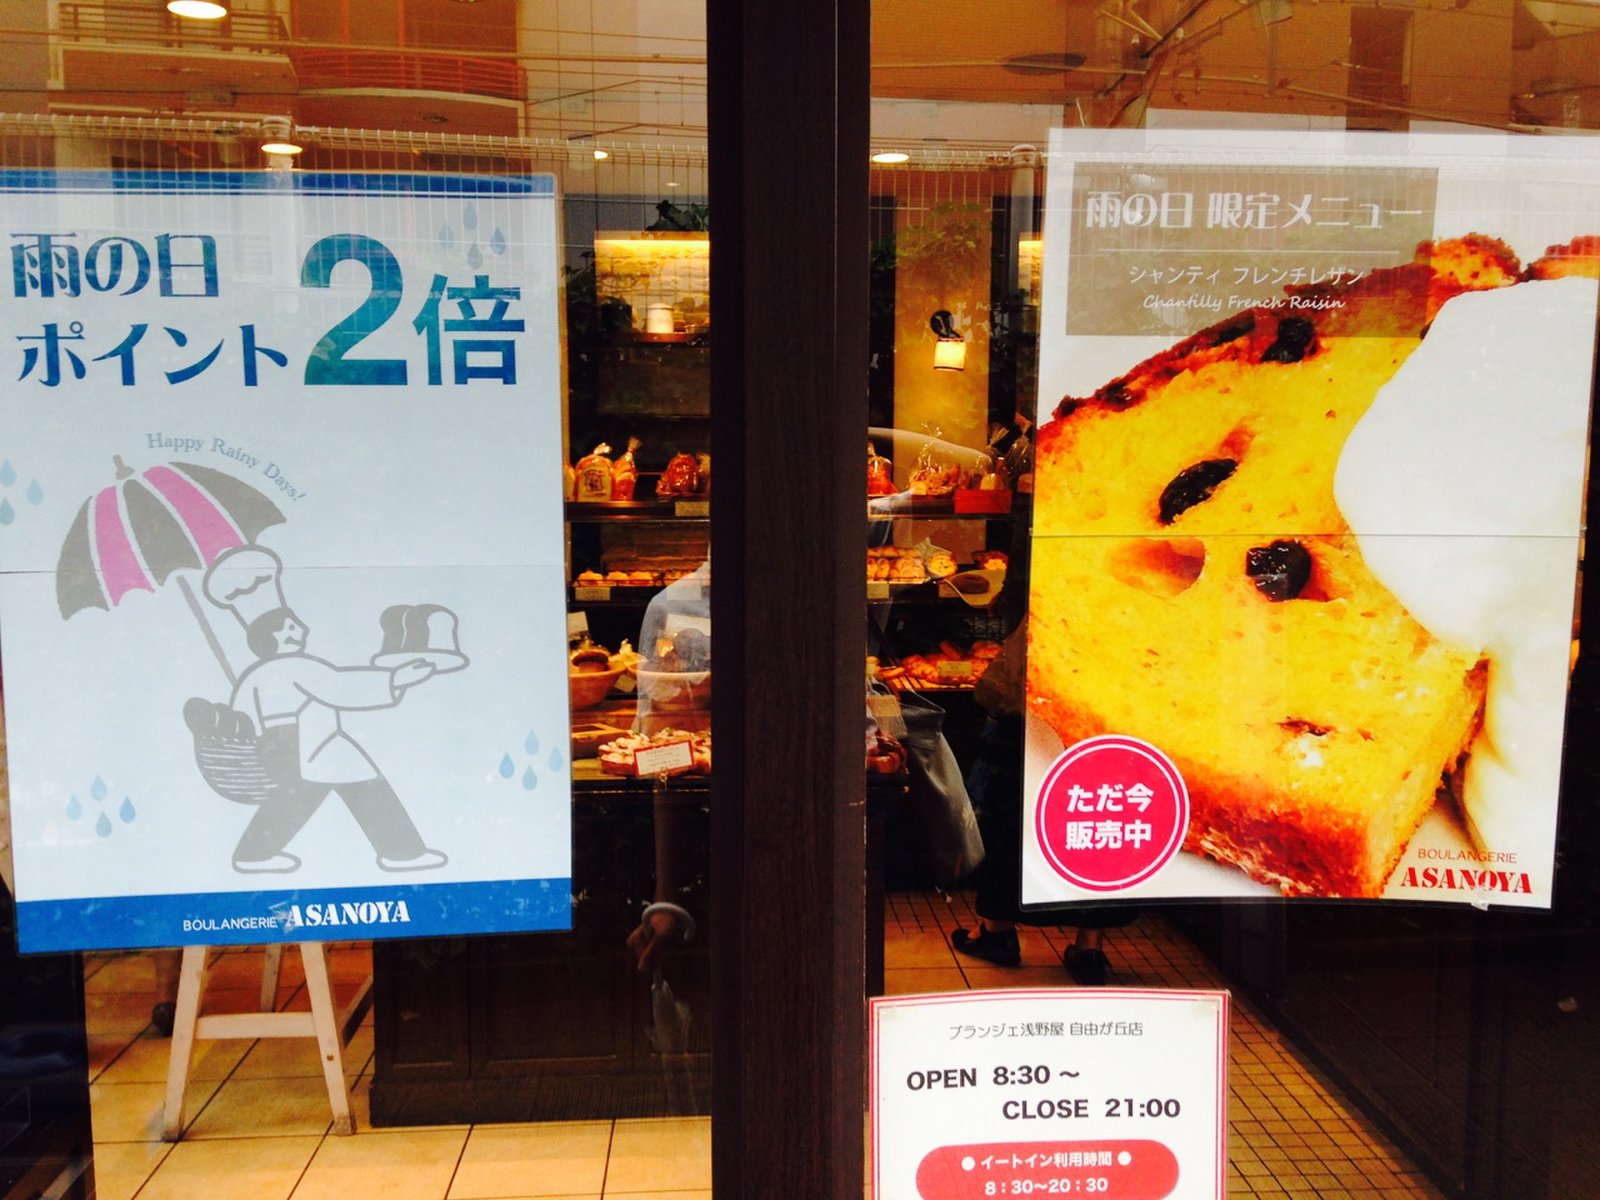 自由が丘 軽井沢 ブランジェ浅野屋 のパンが食べられるカフェ Playlife プレイライフ